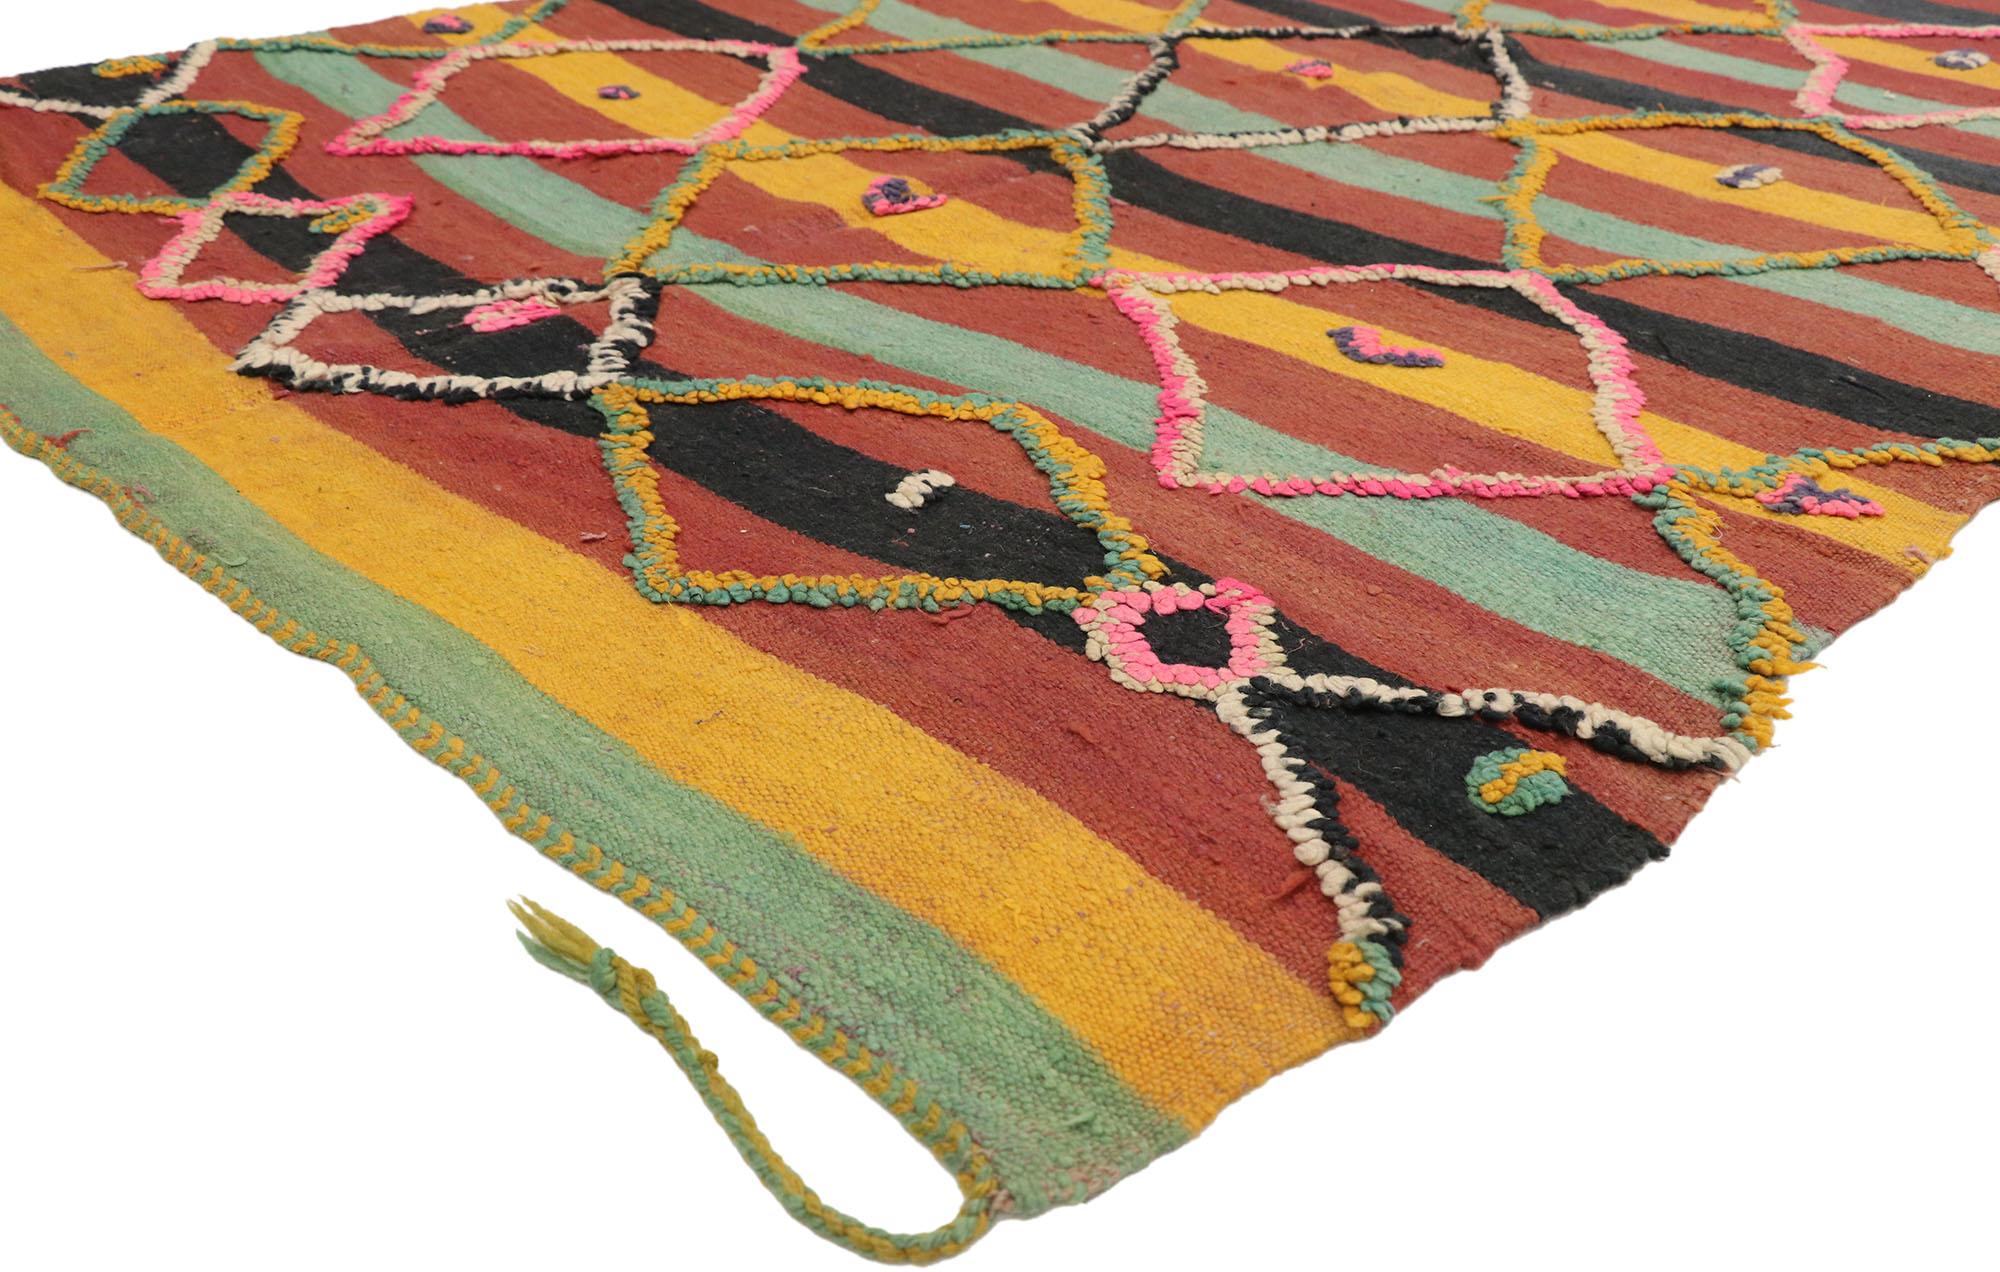 20183 Tapis marocain Vintage High-Low Taznakht, 04'03 x 15'01. Les tapis Taznakht, originaires de la région de Taznakht dans les montagnes du Haut Atlas au Maroc, représentent une fusion harmonieuse des techniques de nouage et de tissage à plat, ce